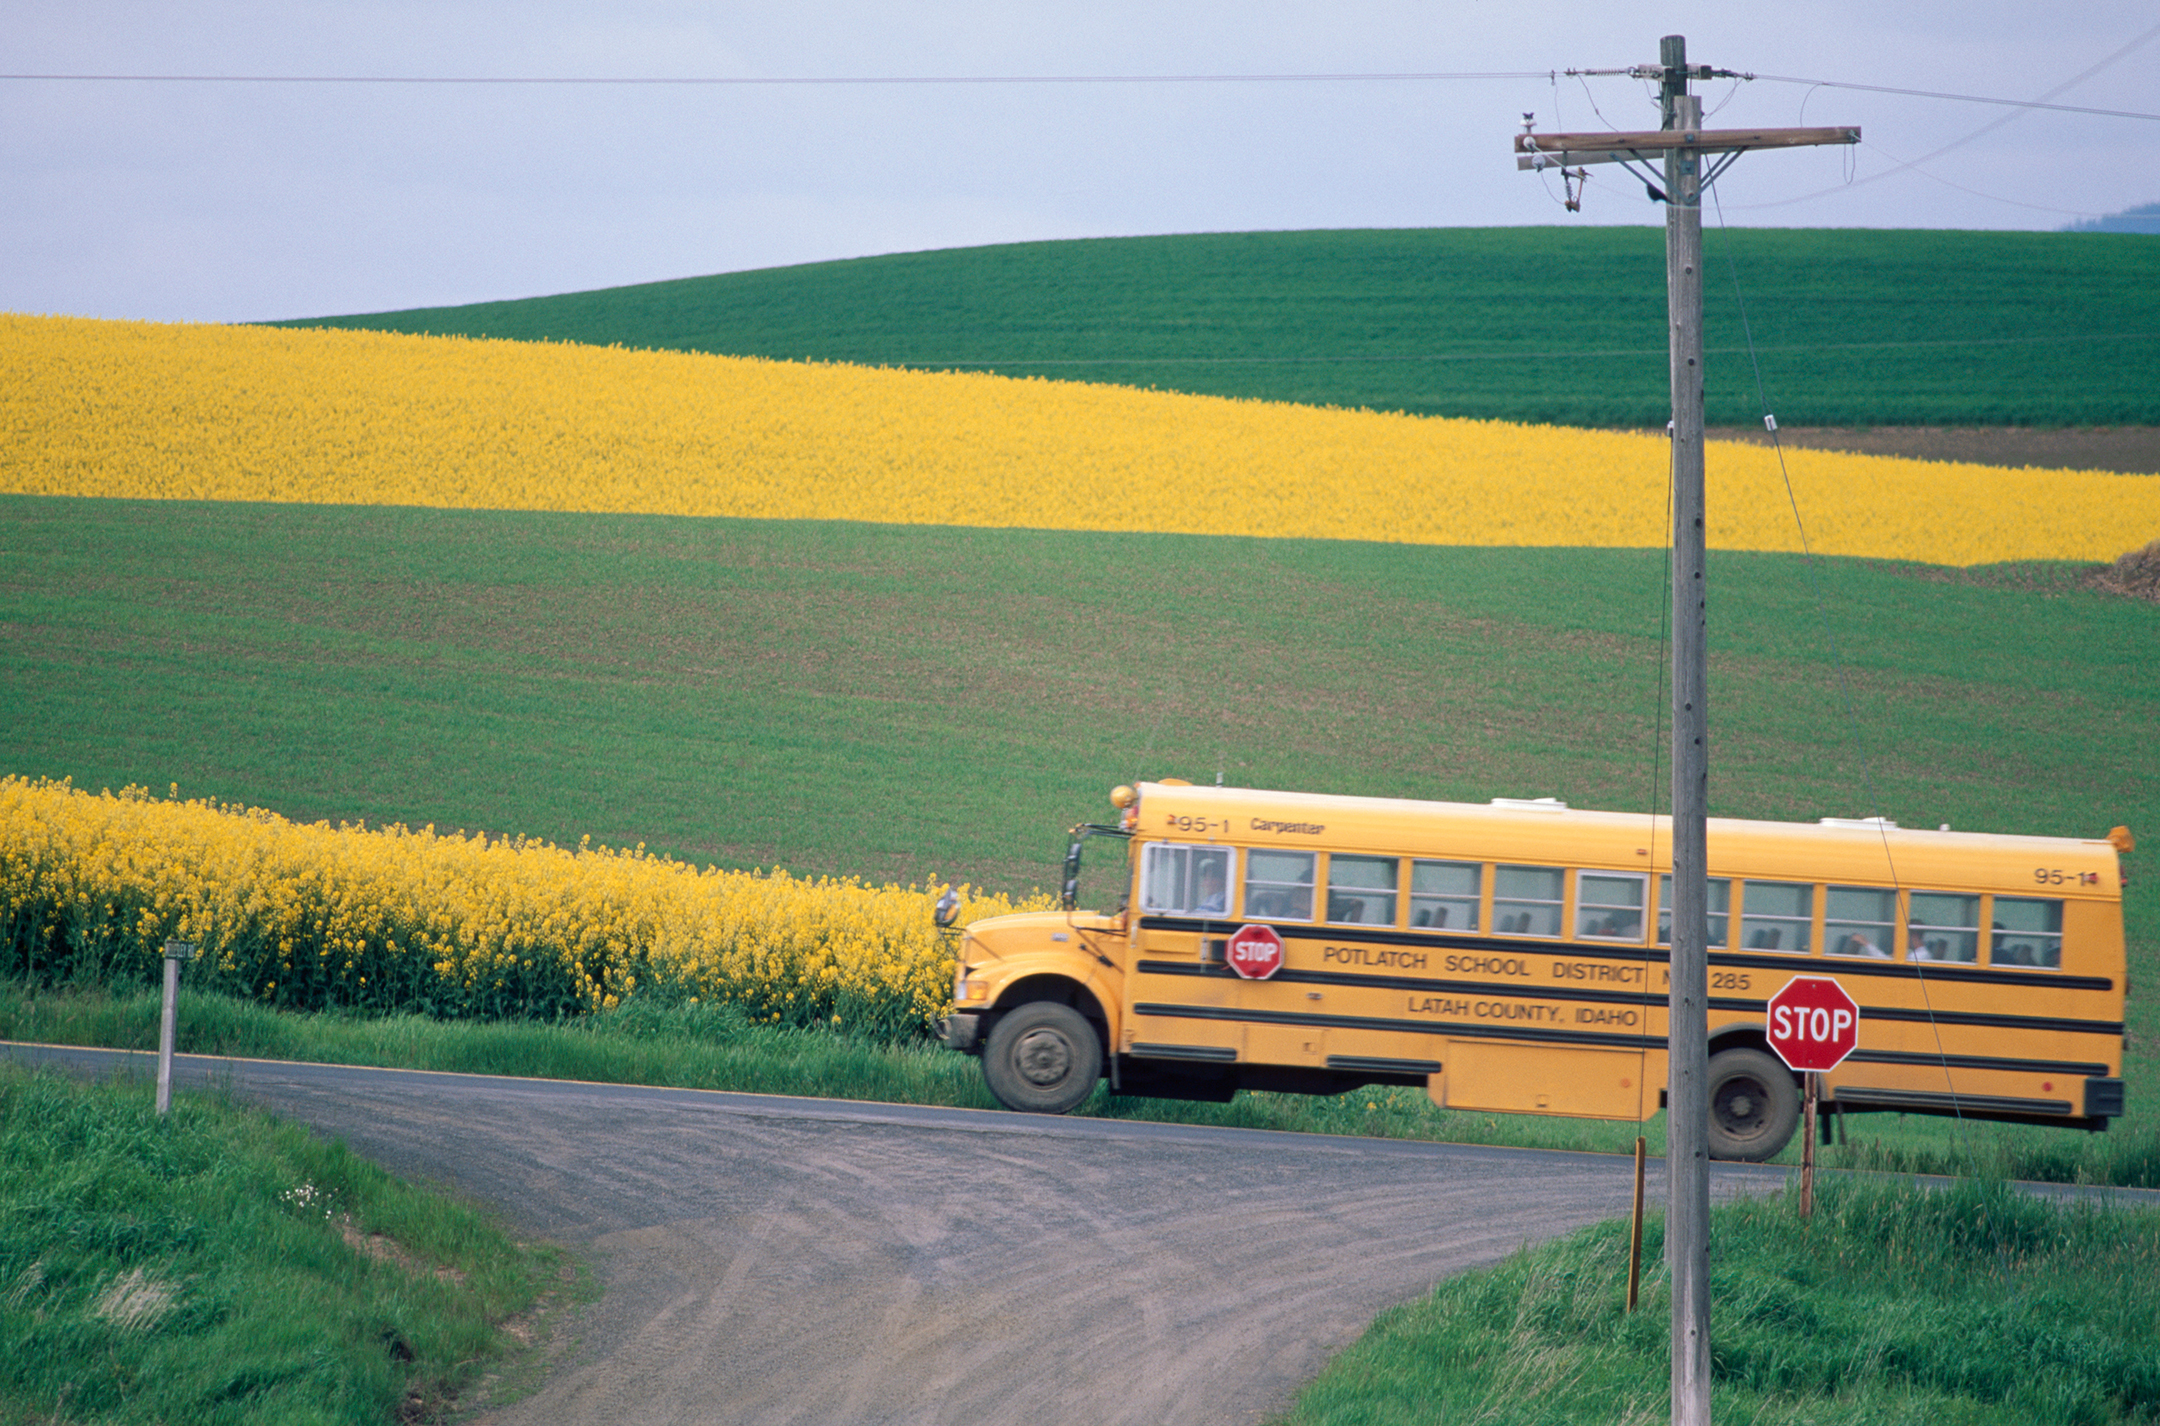 School Bus on Rural Road